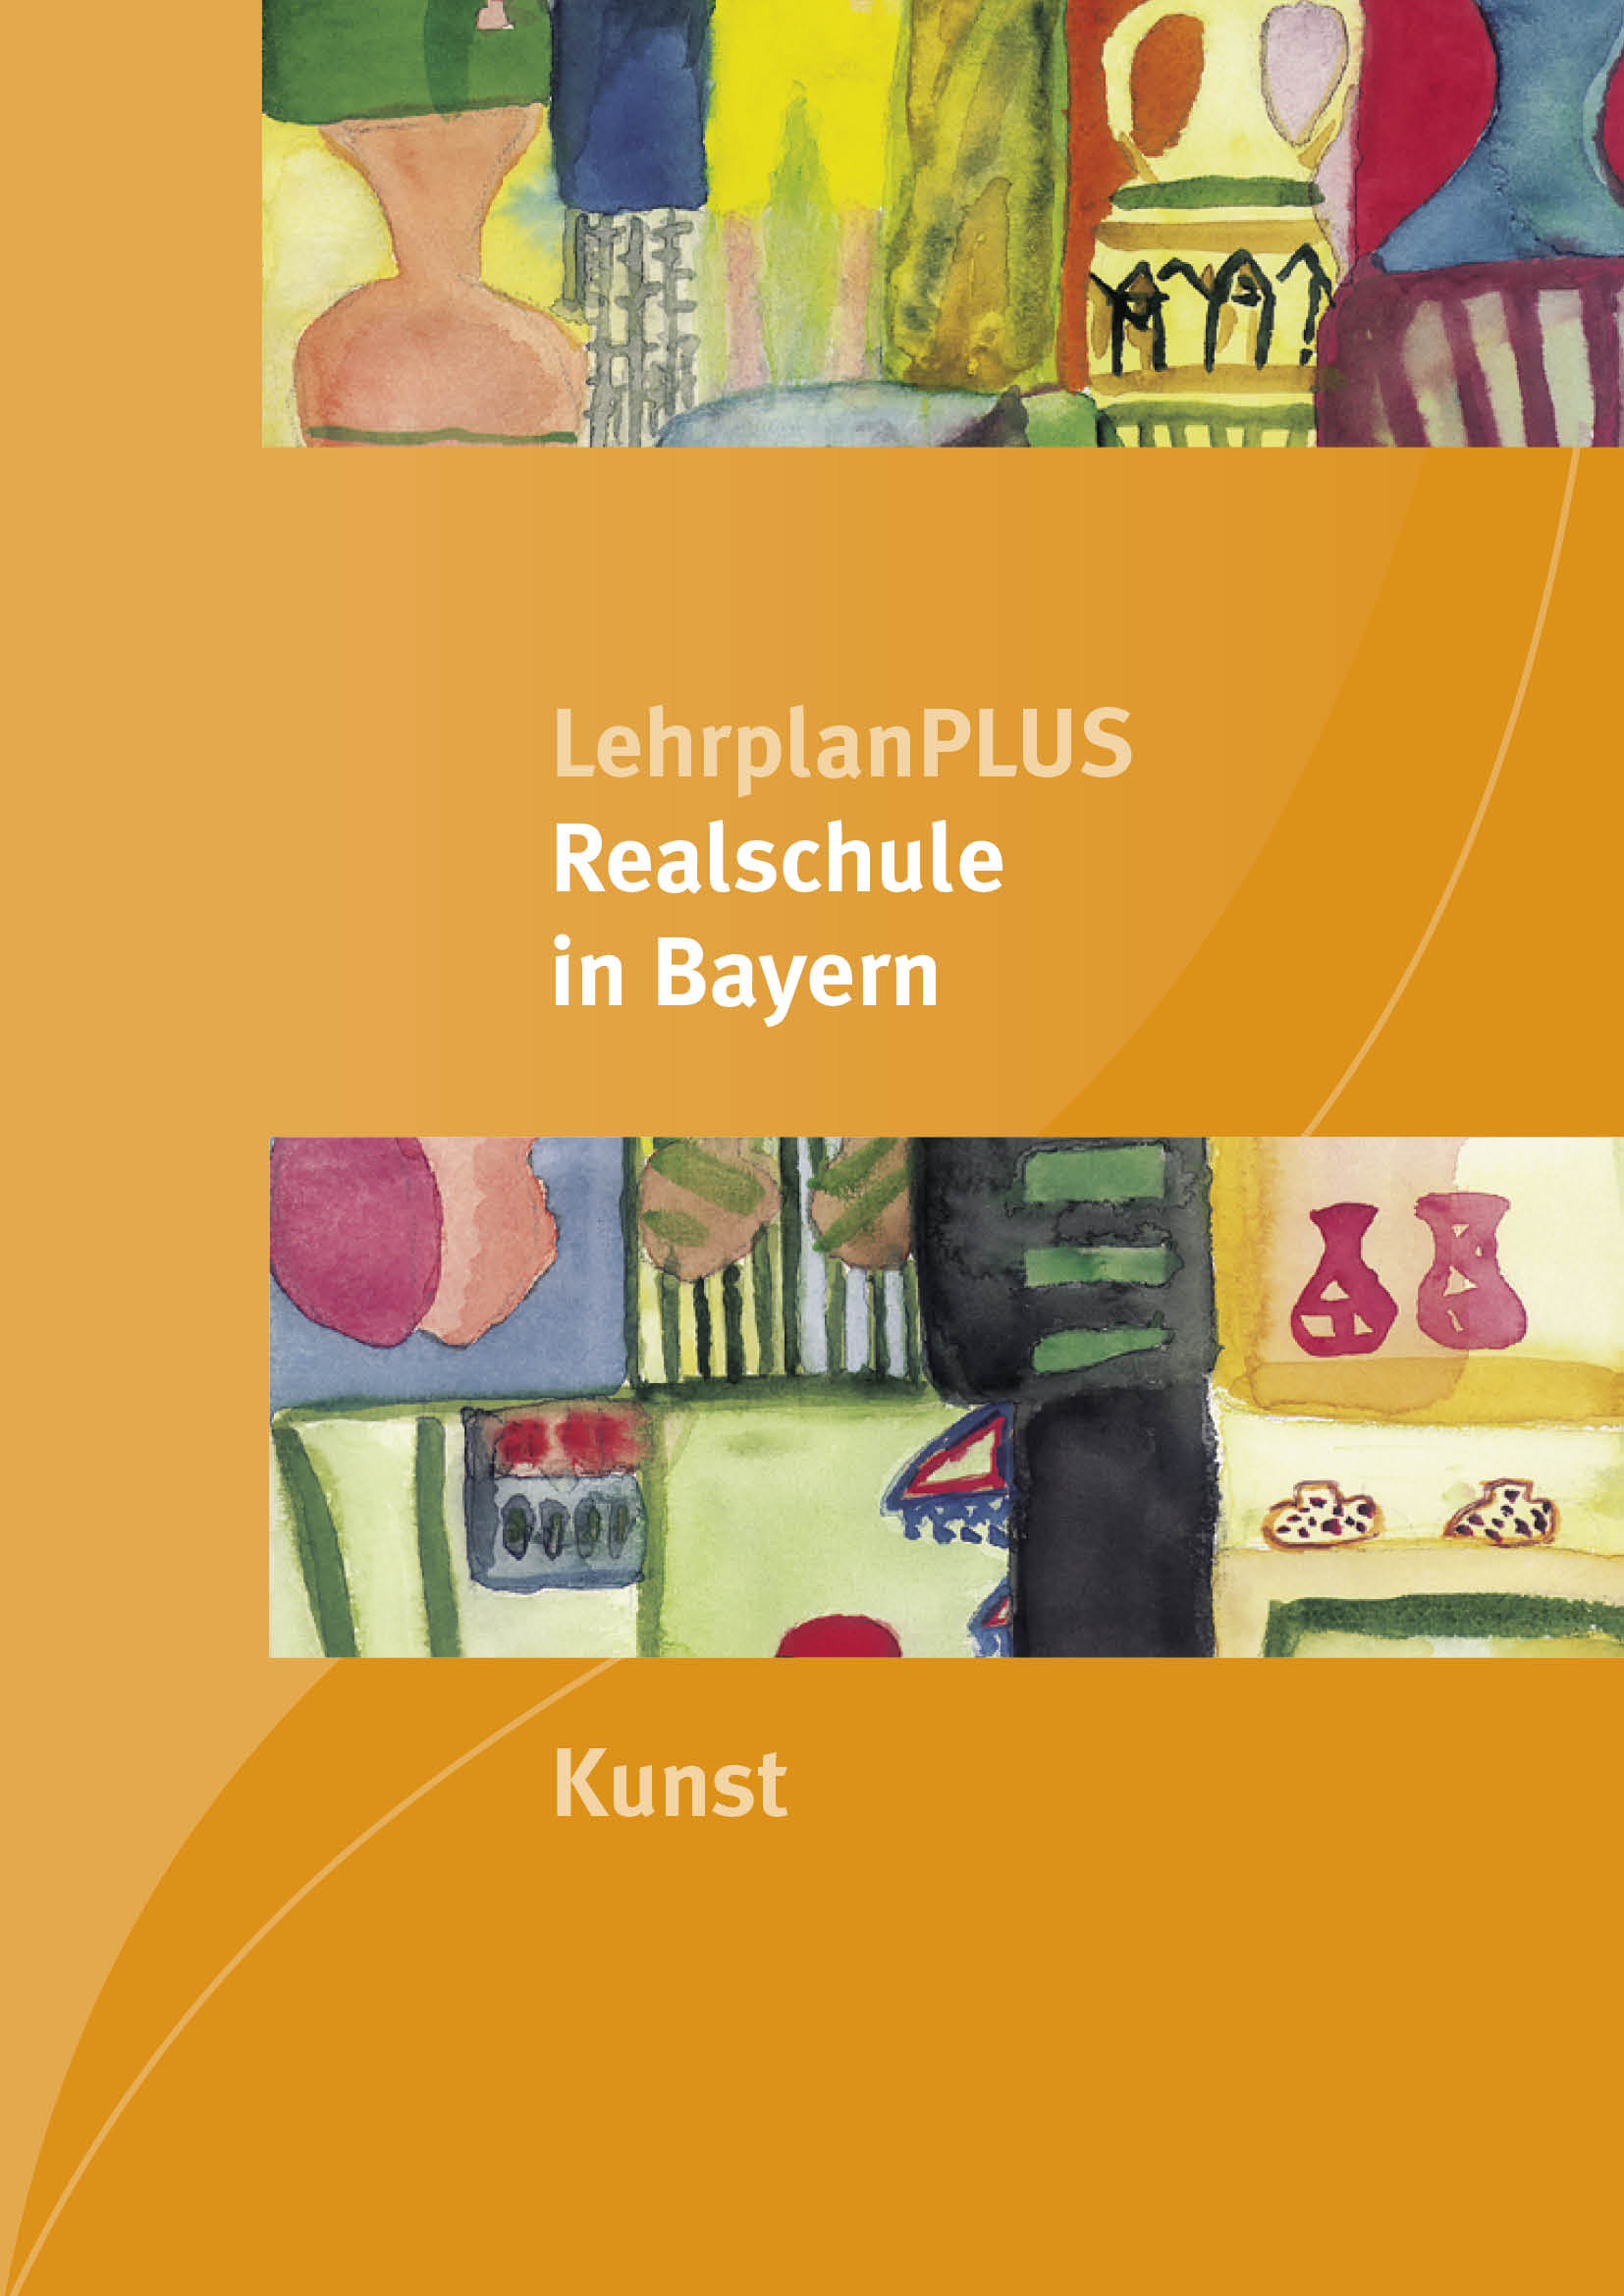 LehrplanPLUS Realschule in Bayern - Kunst